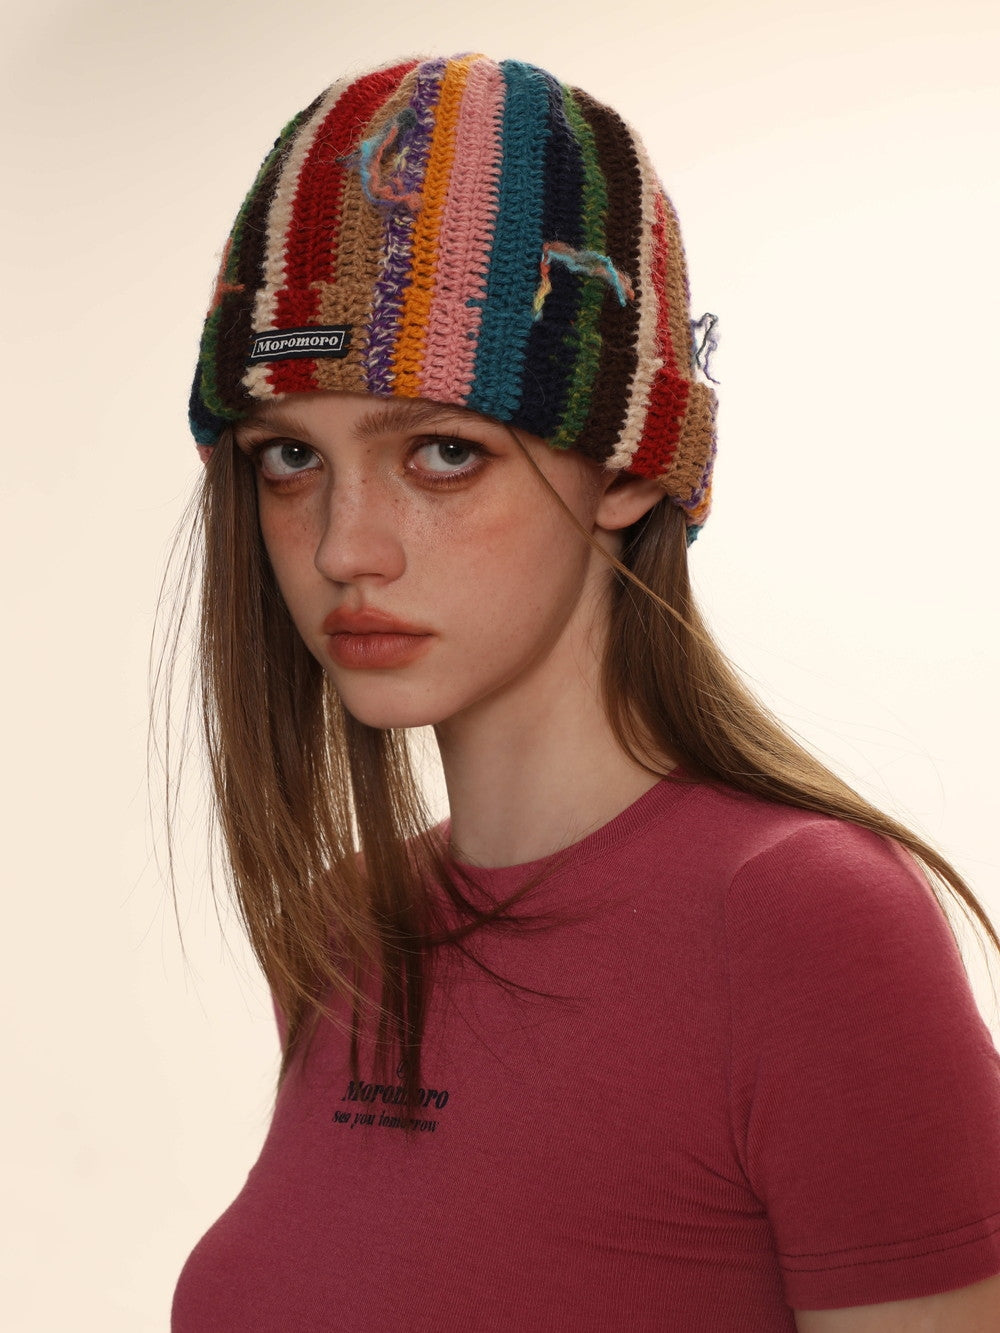 Retro Stripe Knit Colorful Hat - chiclara